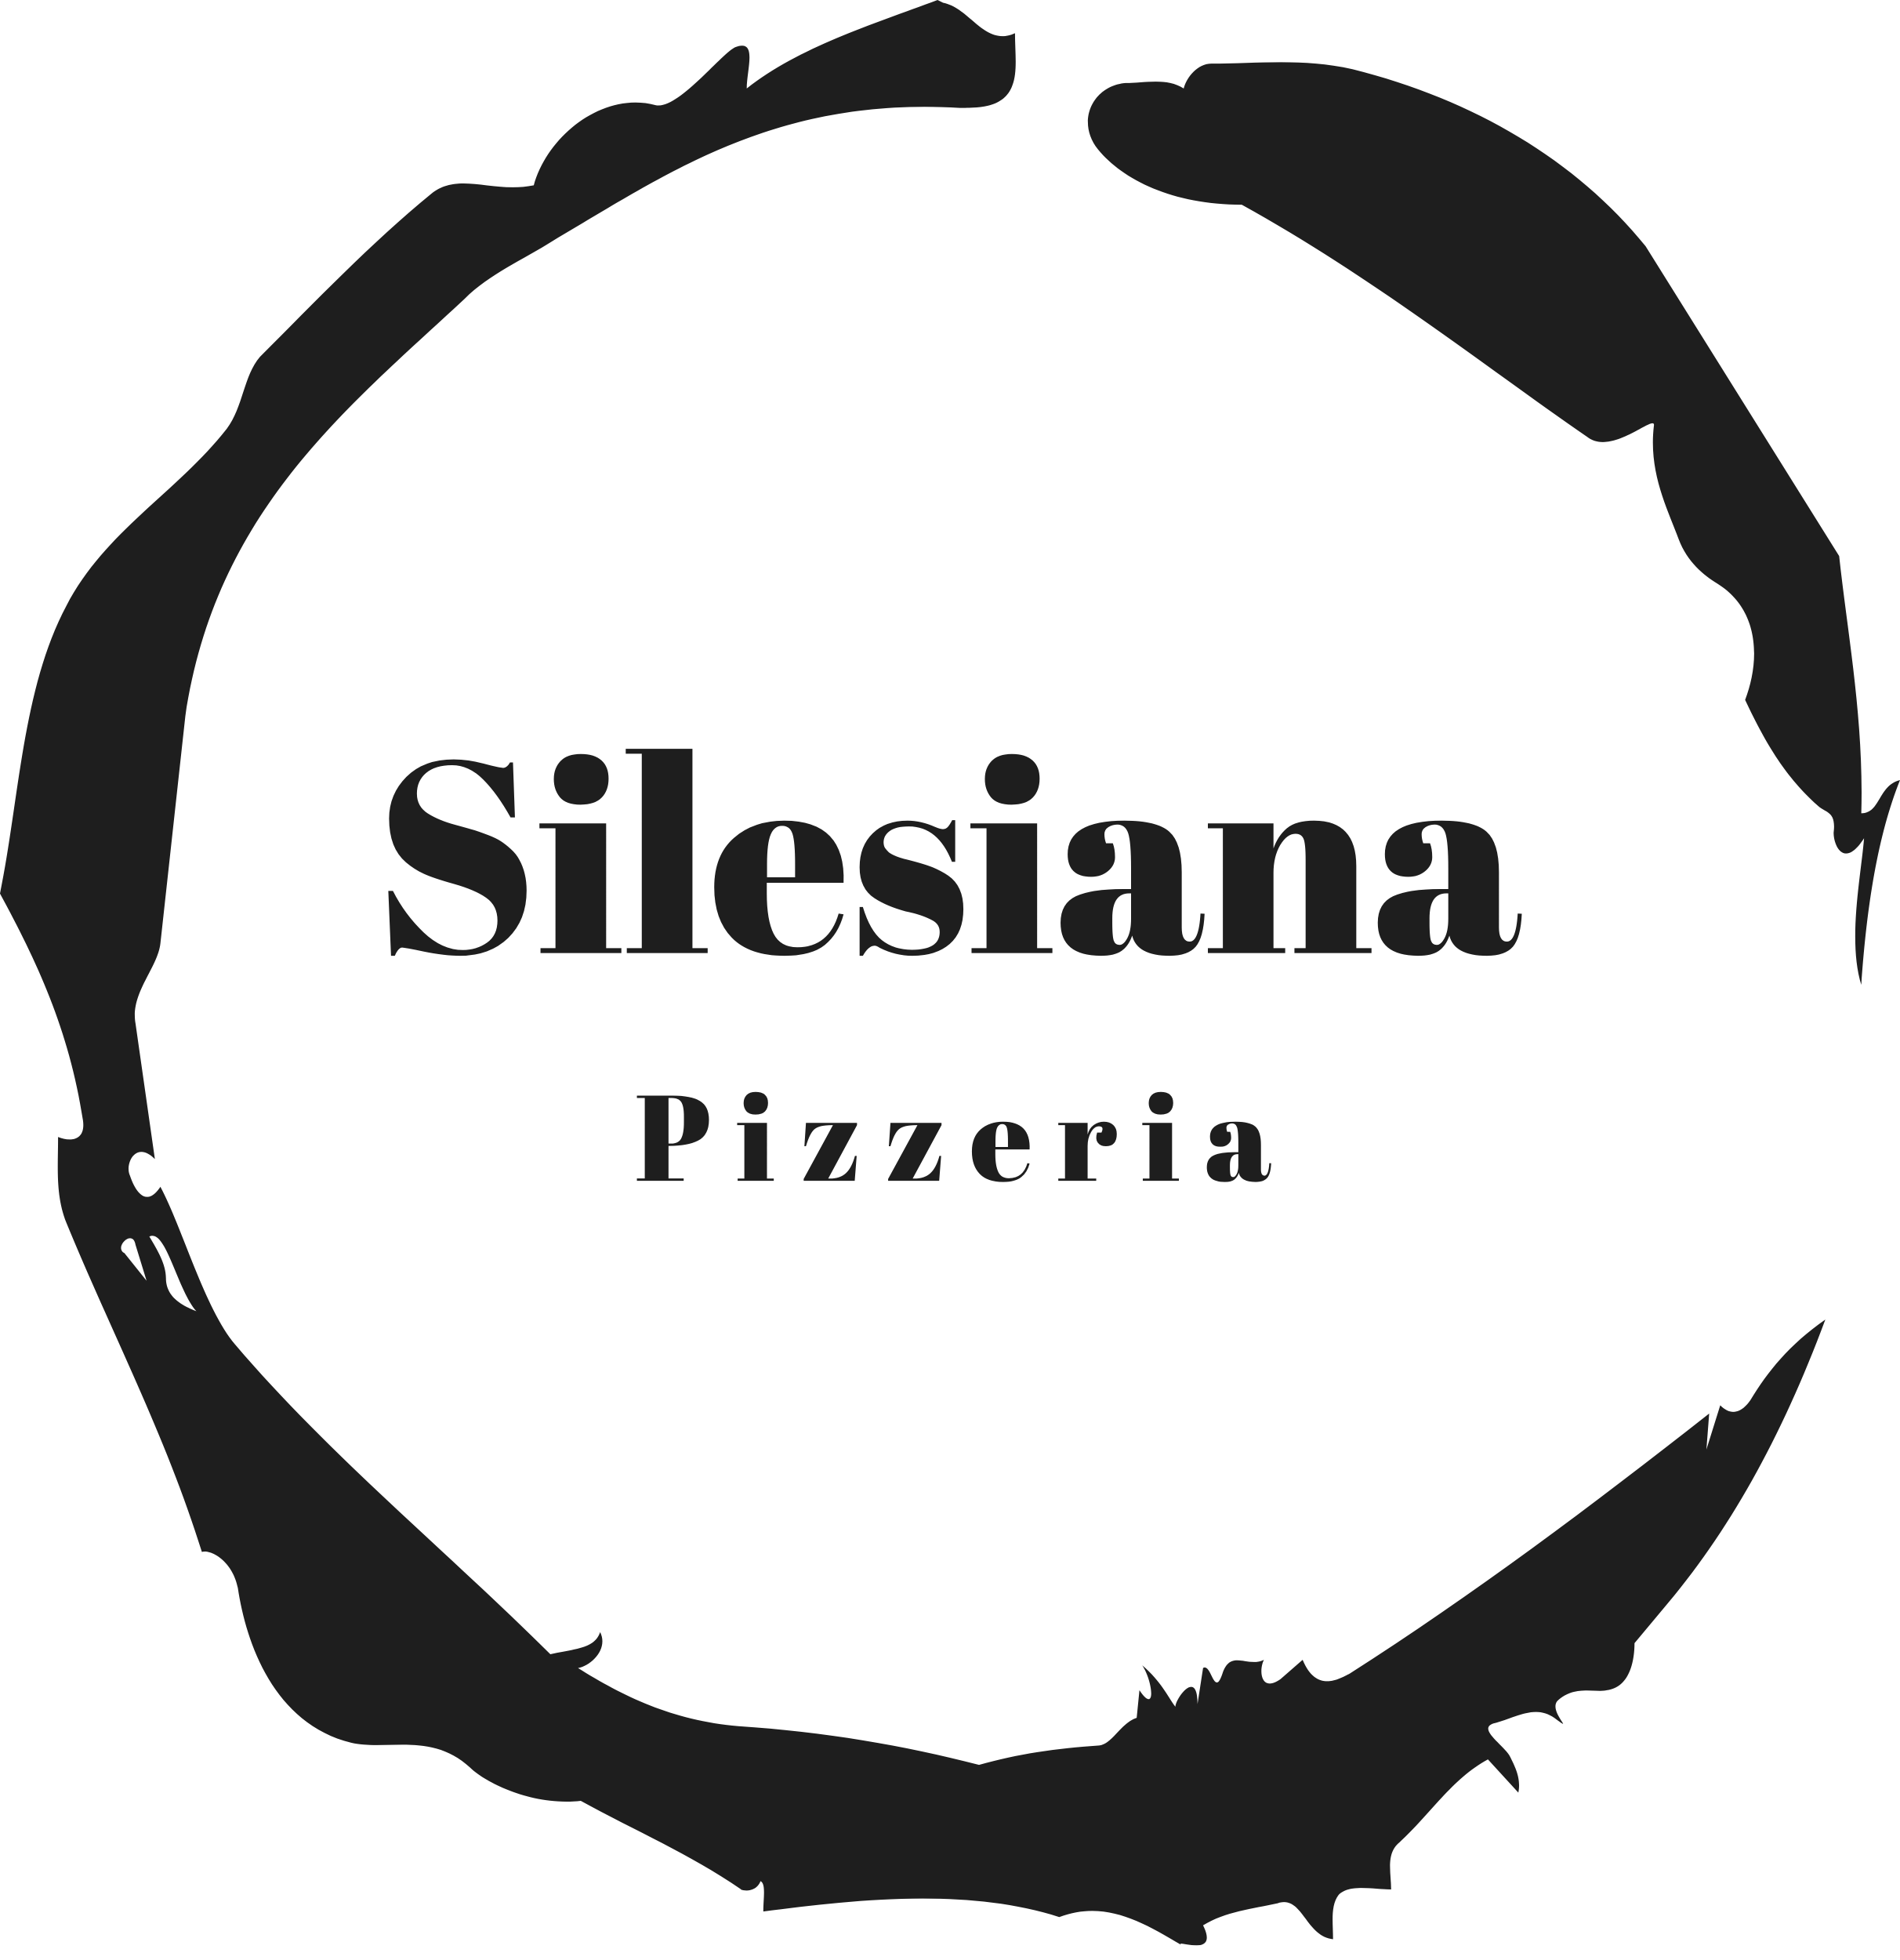 Pizzeria Silesiana